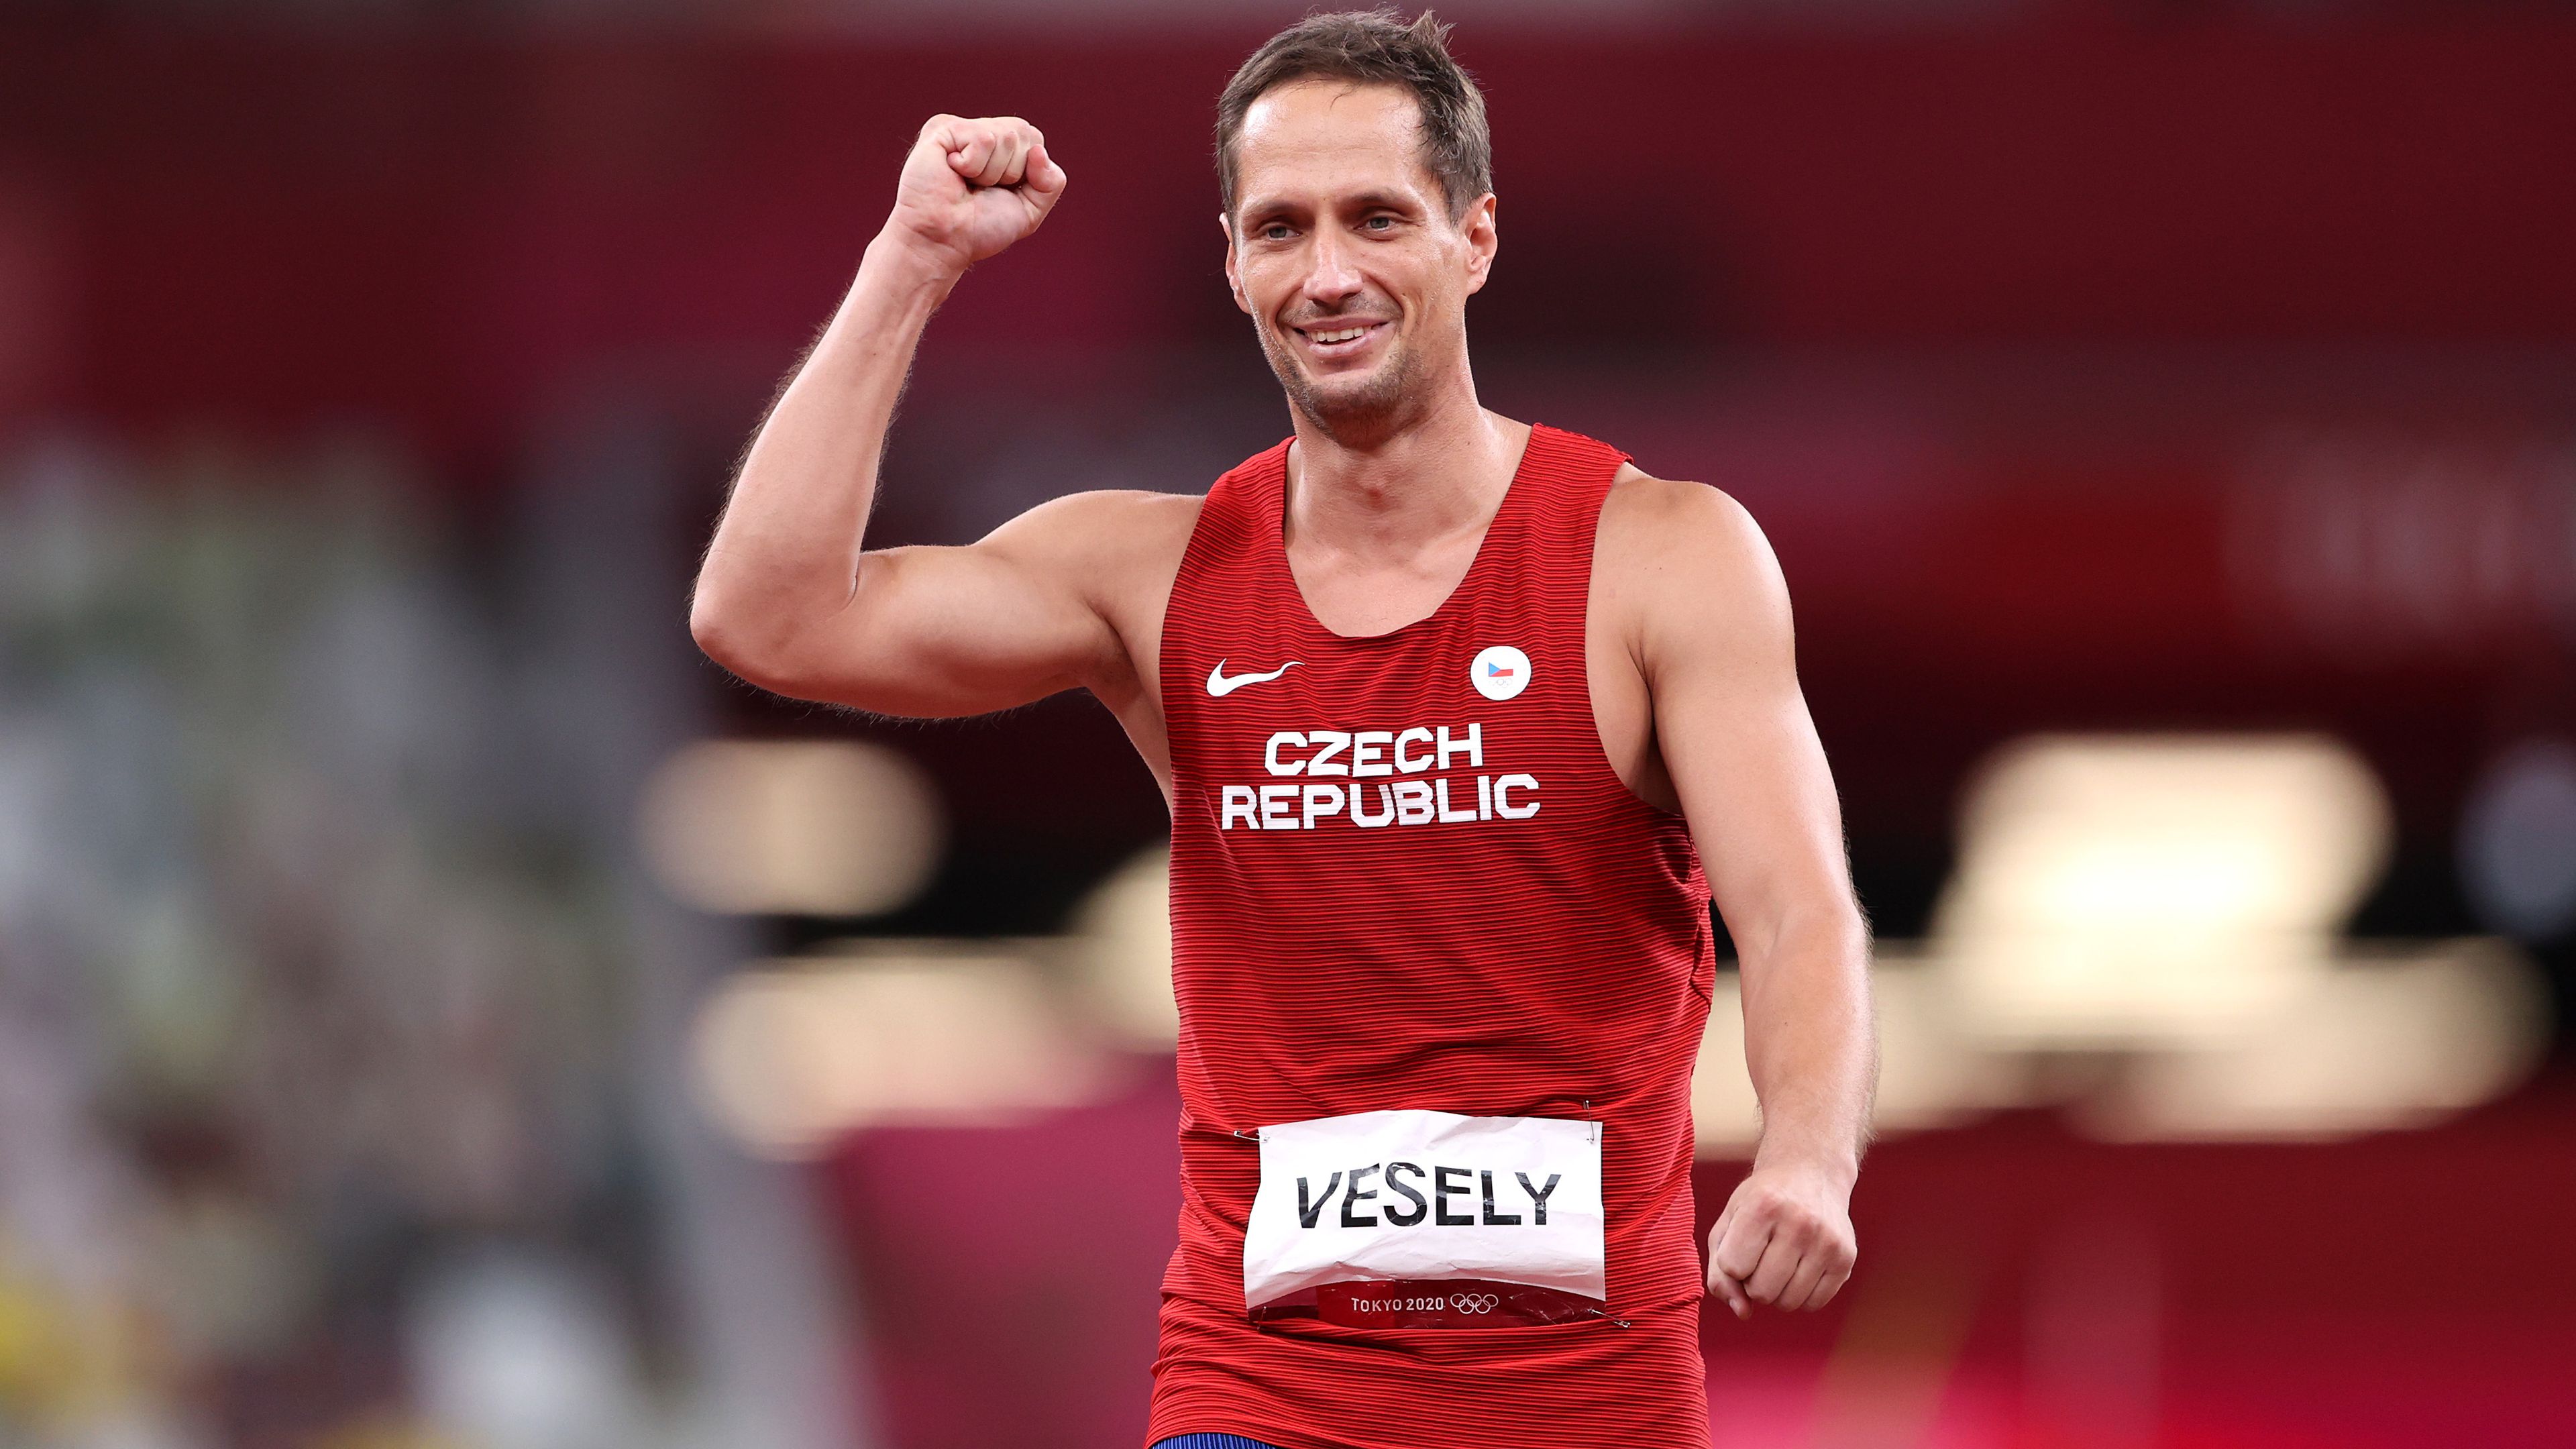 Visszavonult az olimpiai bronzérmes, világ- és Európa-bajnok sportoló